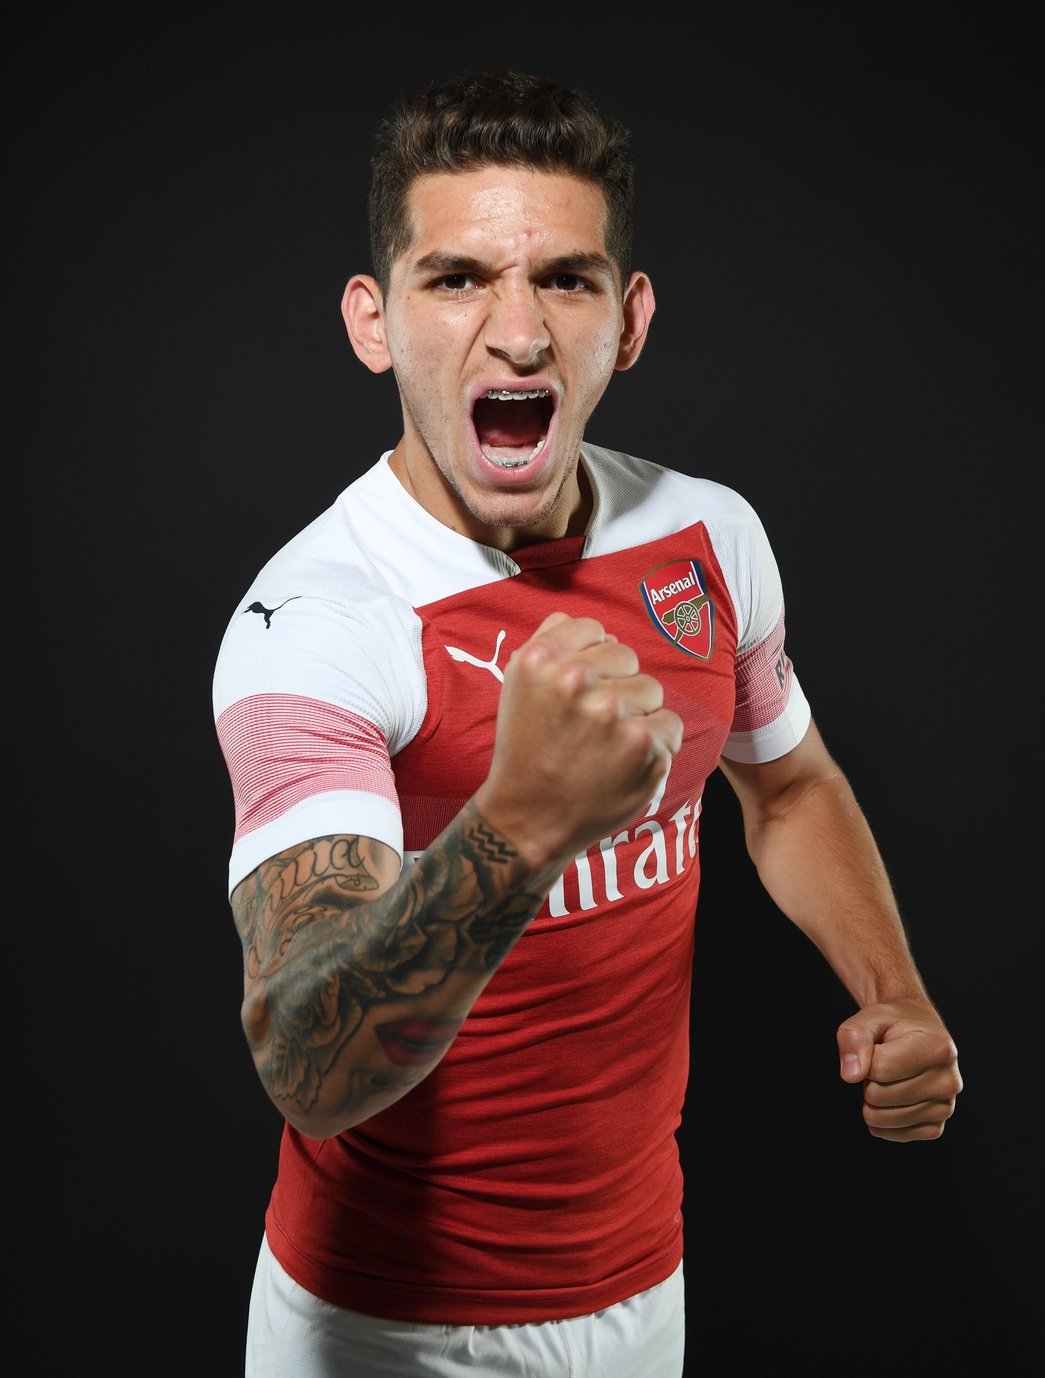  Lucas  Torreira  to join Arsenal  News Arsenal  com